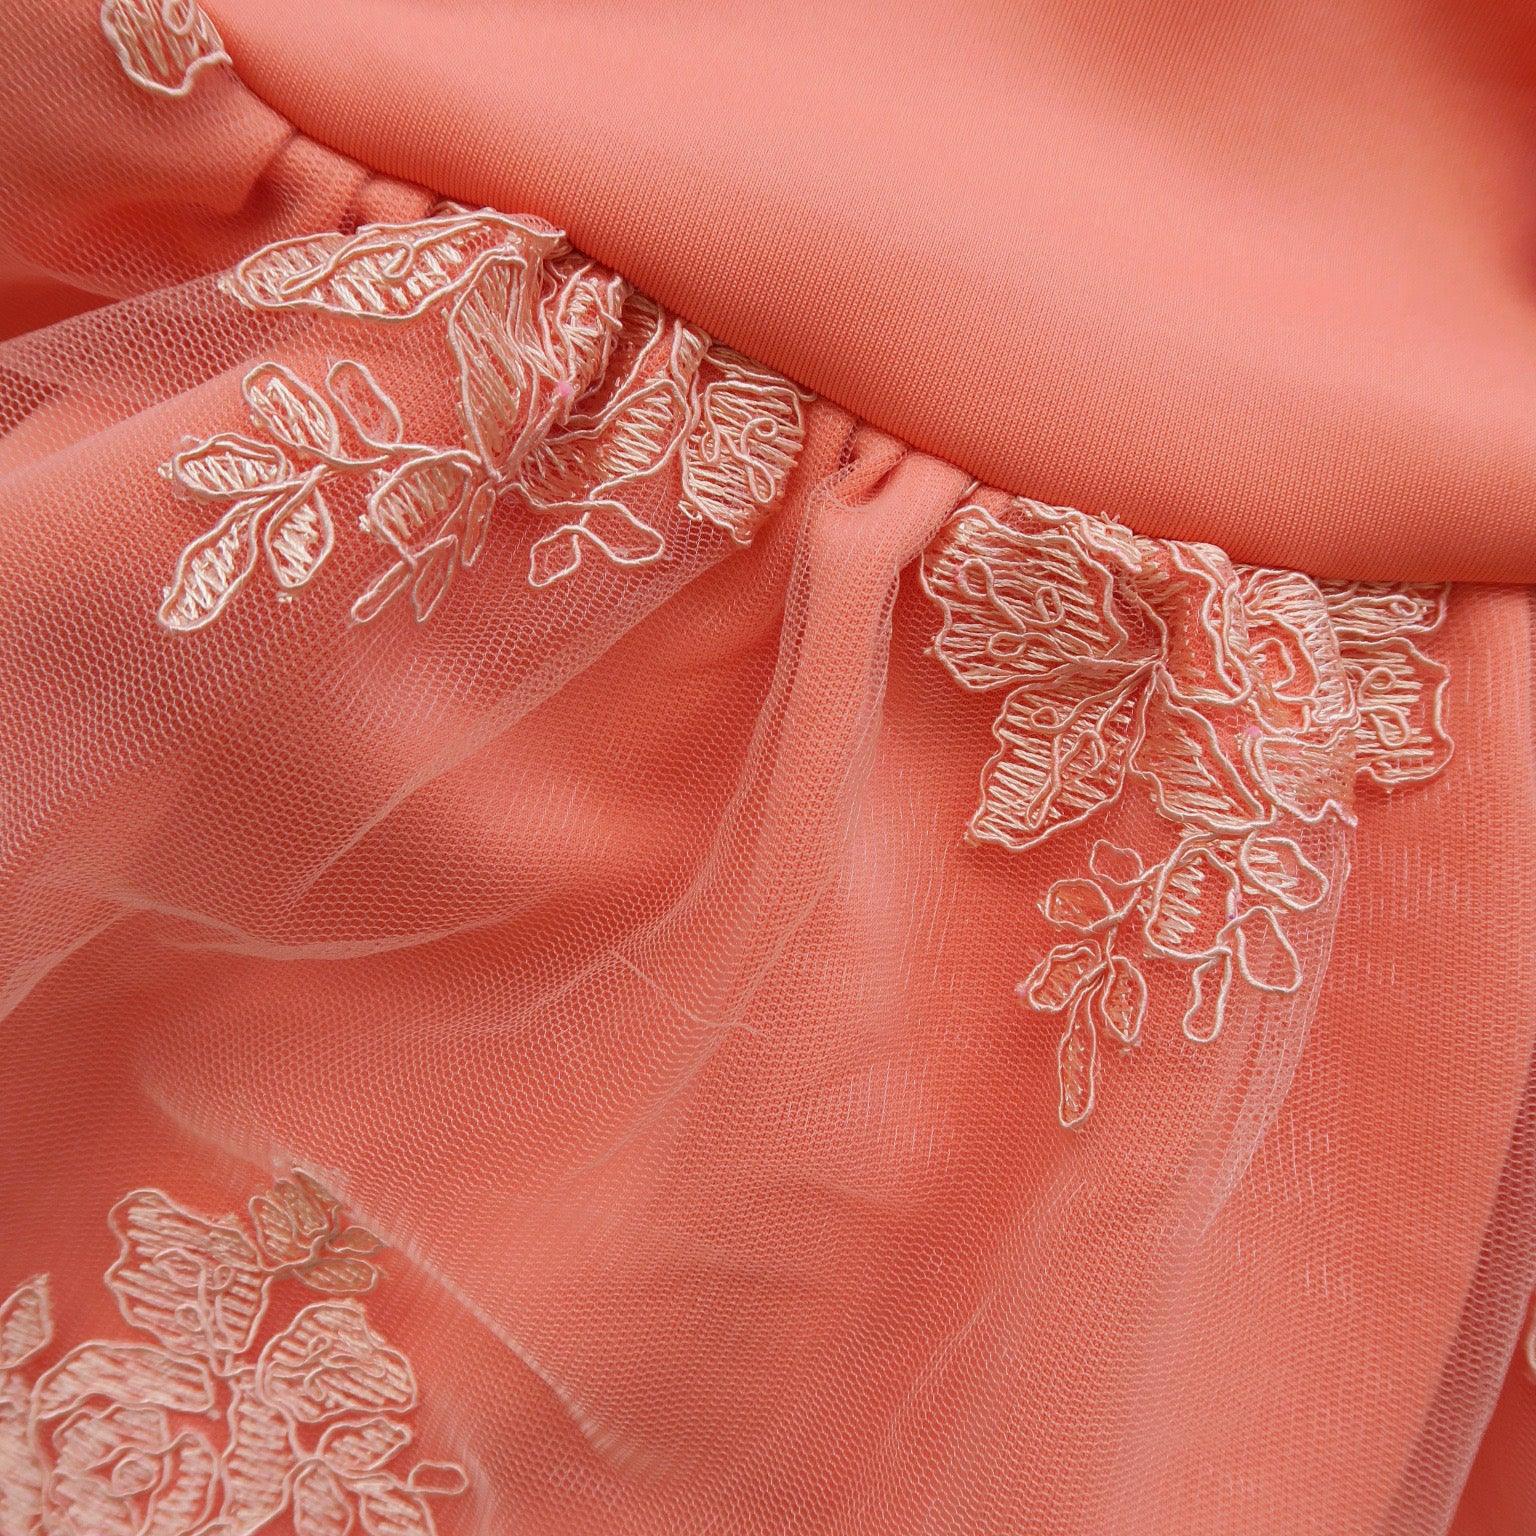 Iris Dress in Dark Peach Neoprene & Fancy Tulle Embroidery - Lil' Tati